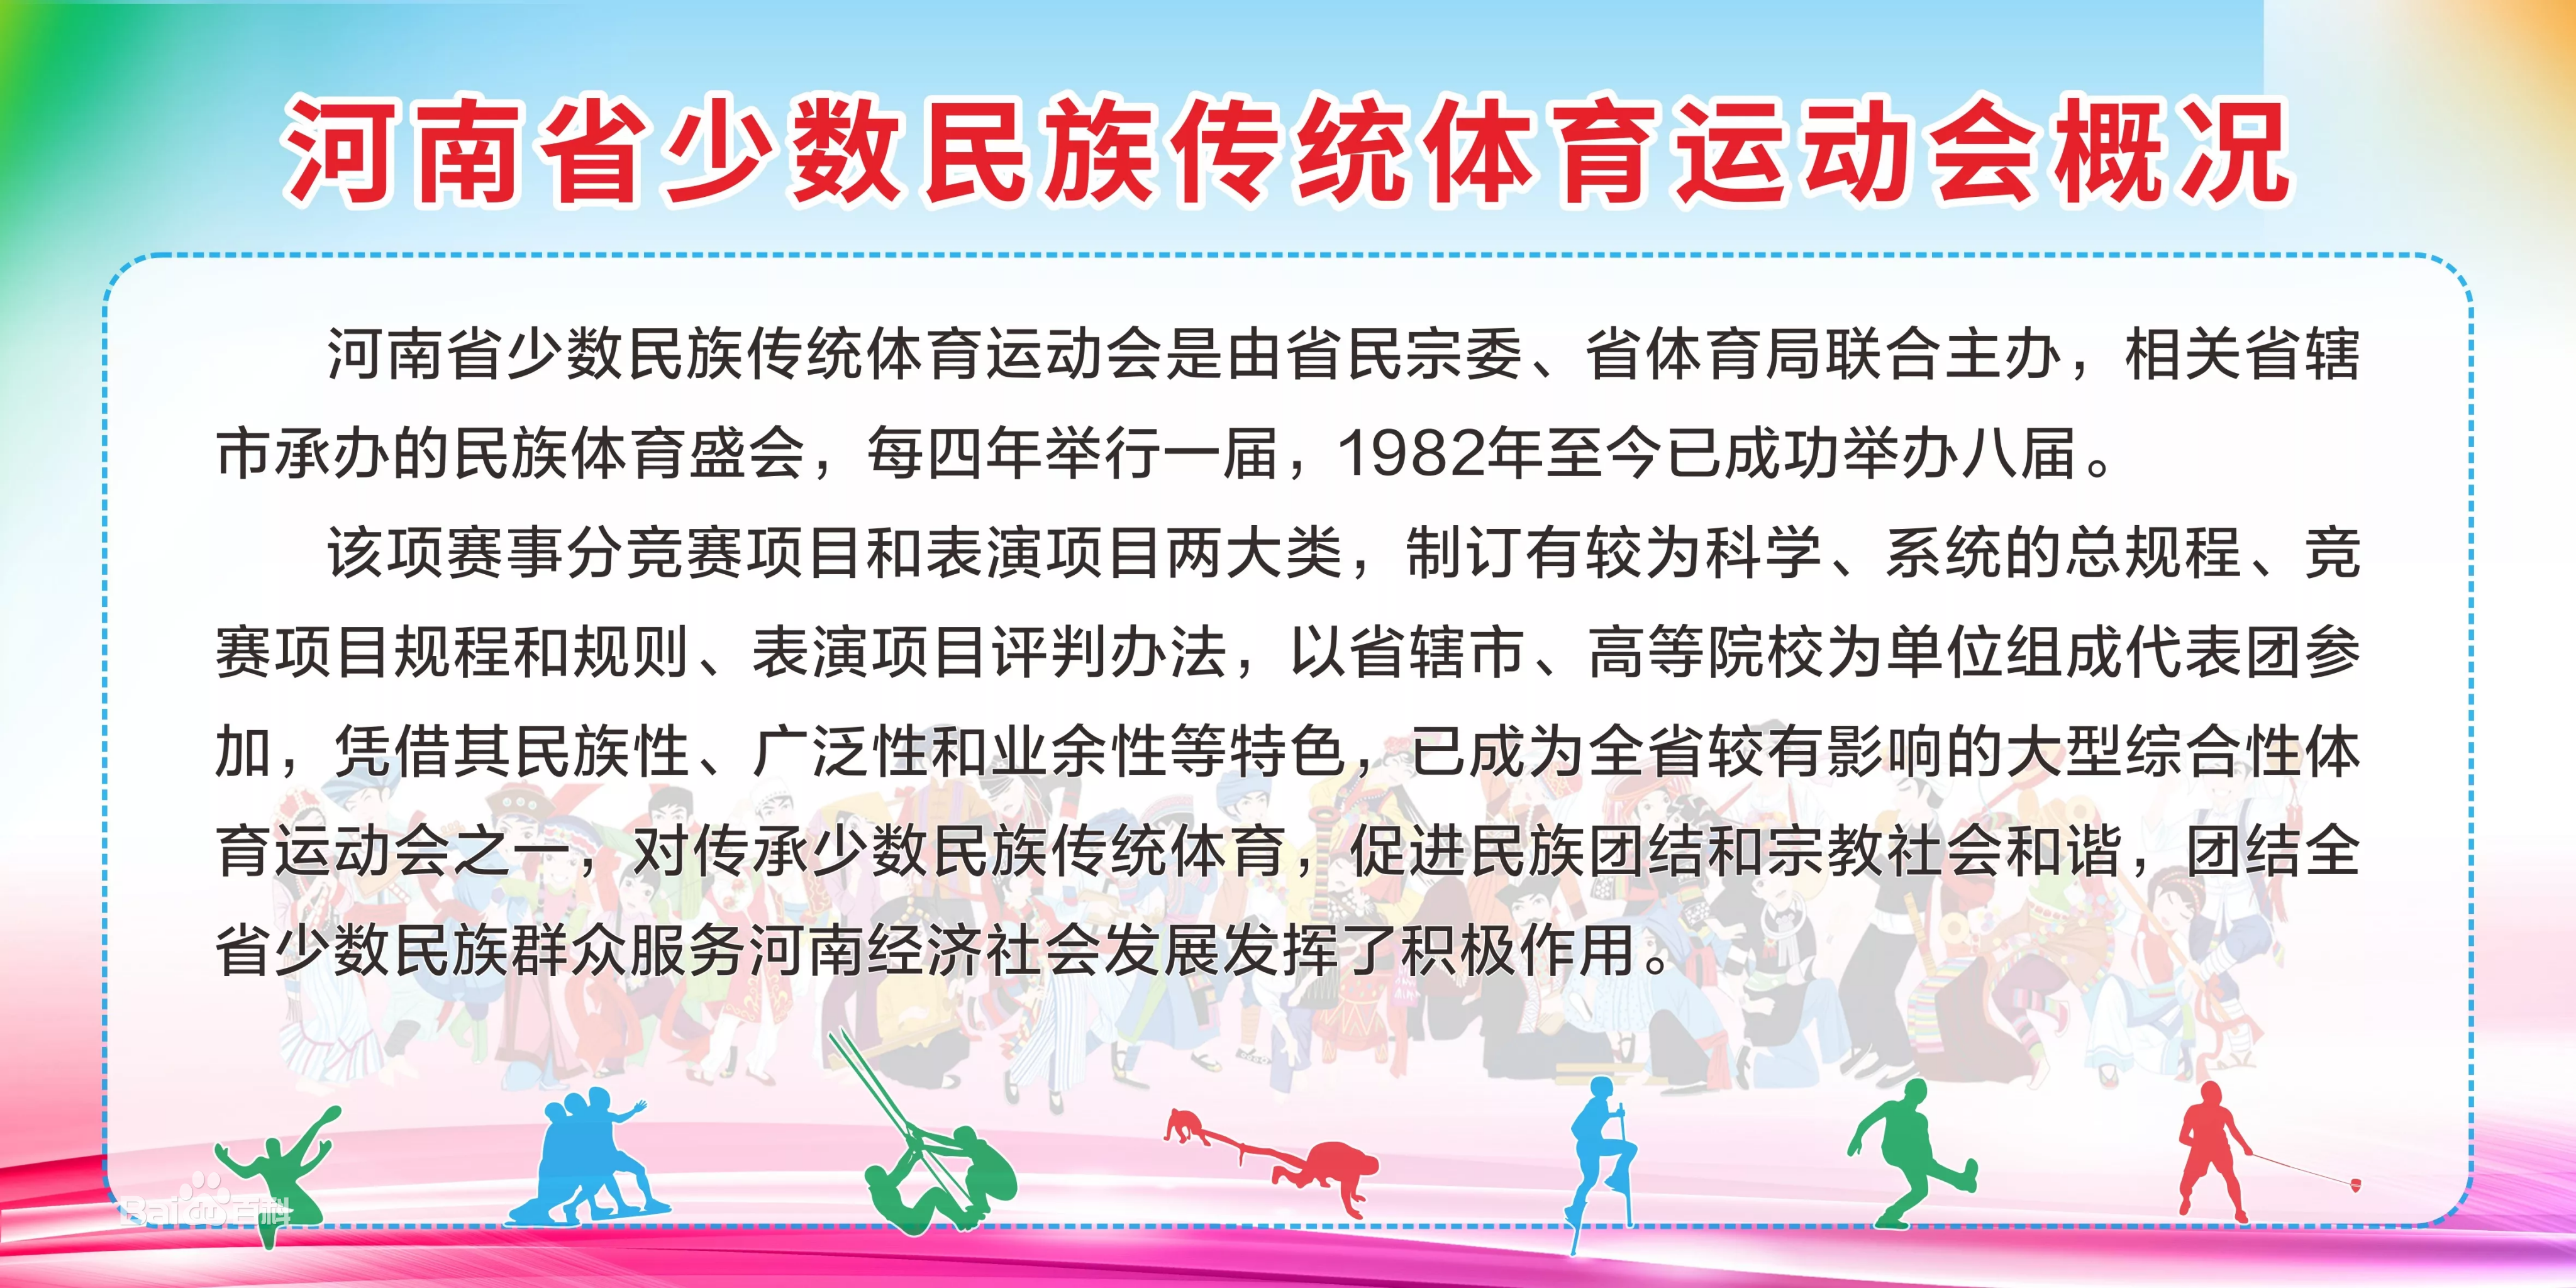 河南省第二屆少數民族傳統體育運動會